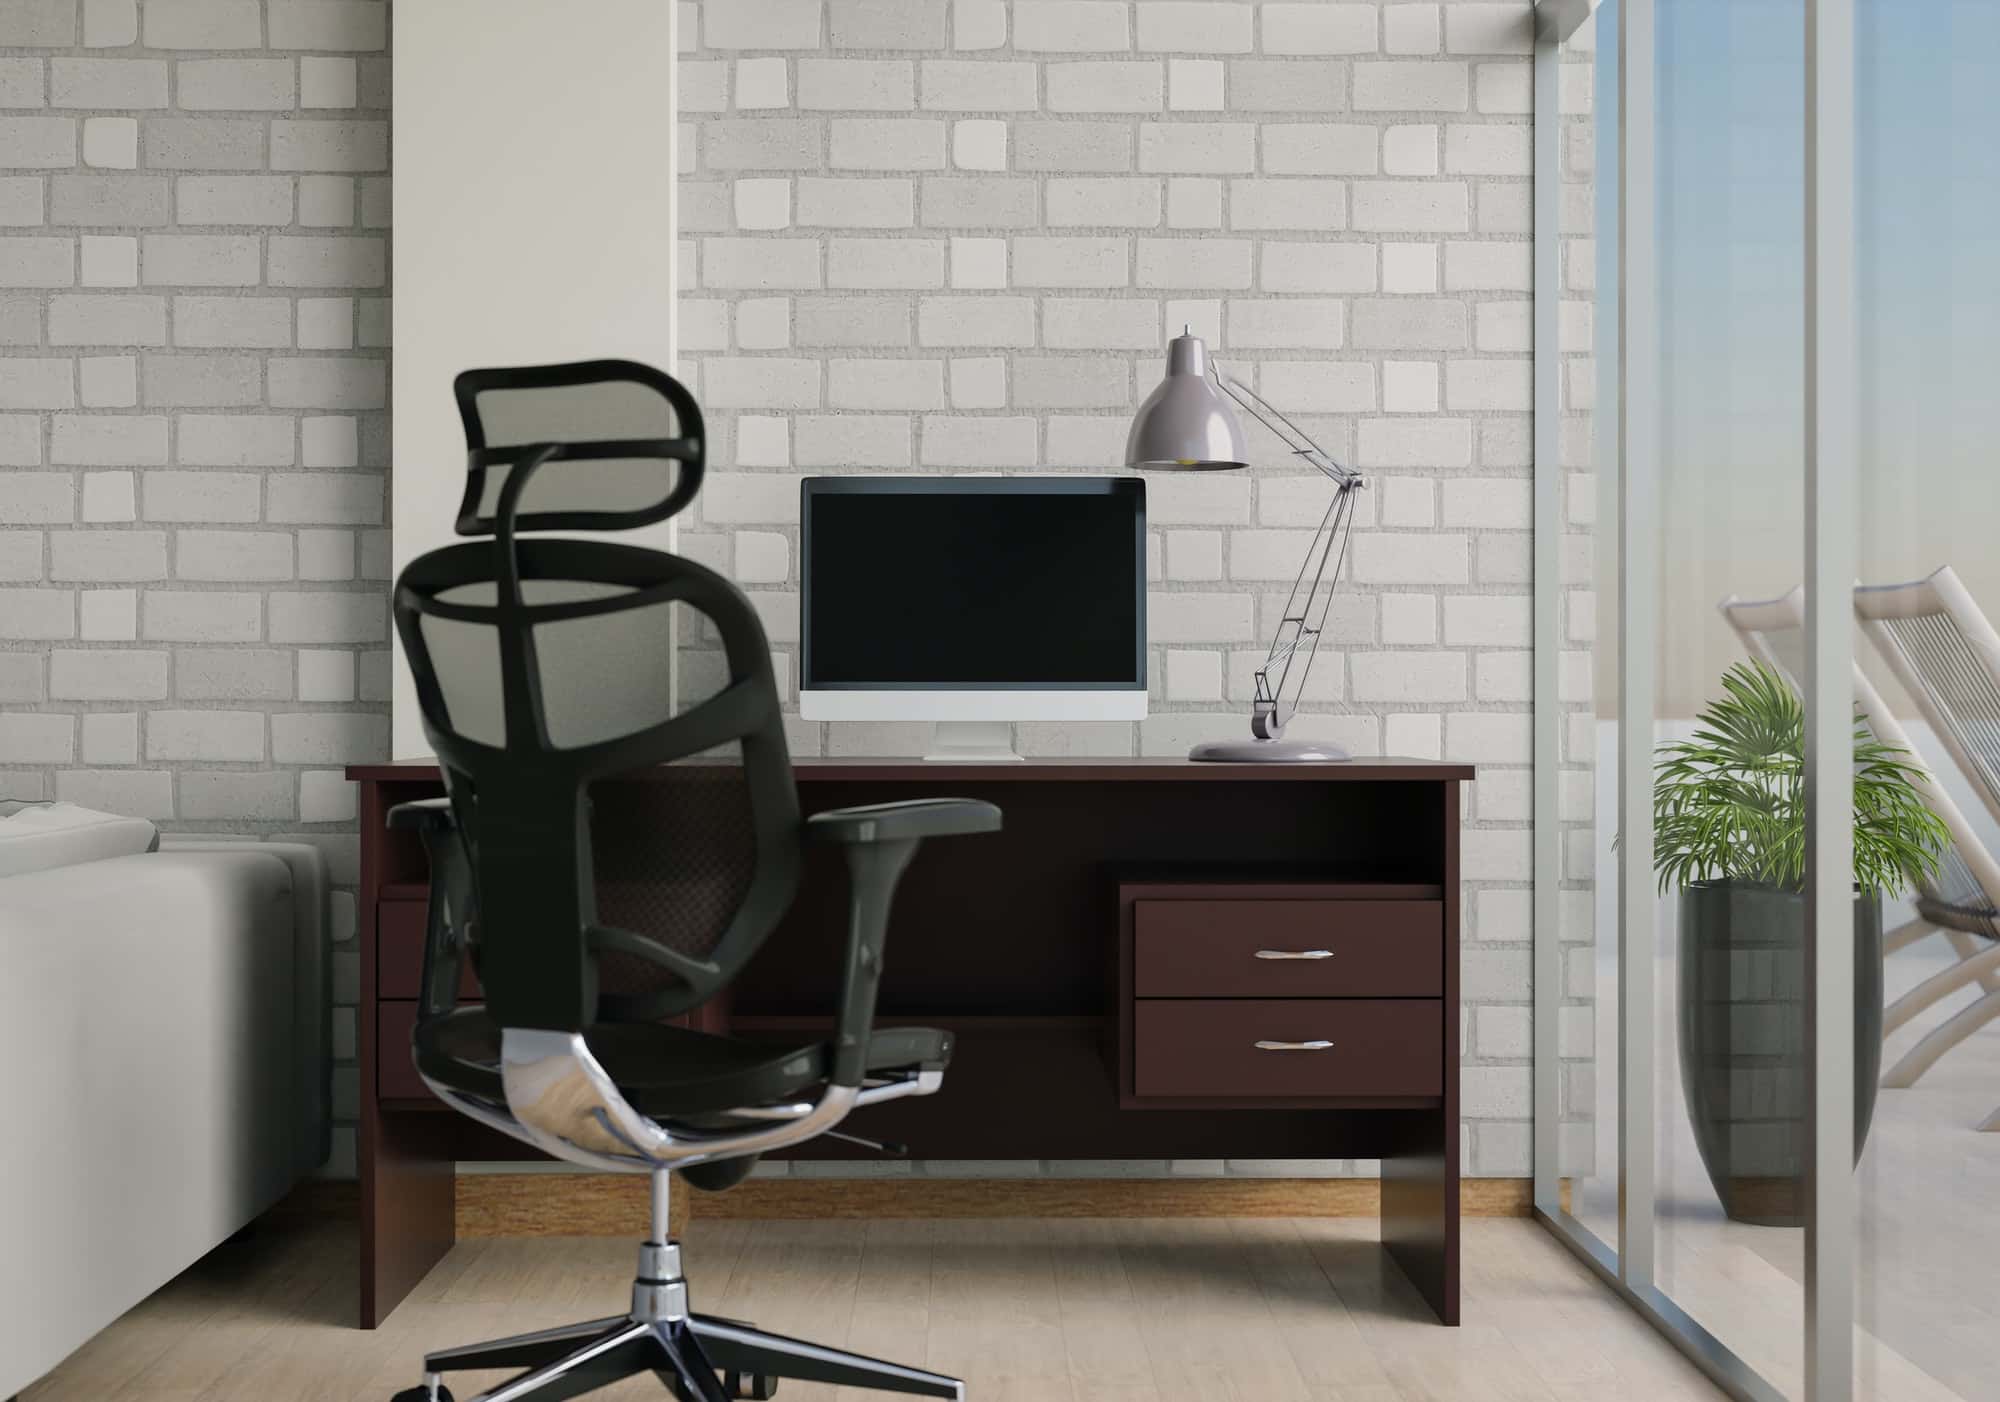 Créez un environnement professionnel inspirant grâce à un mobilier de bureau de qualité